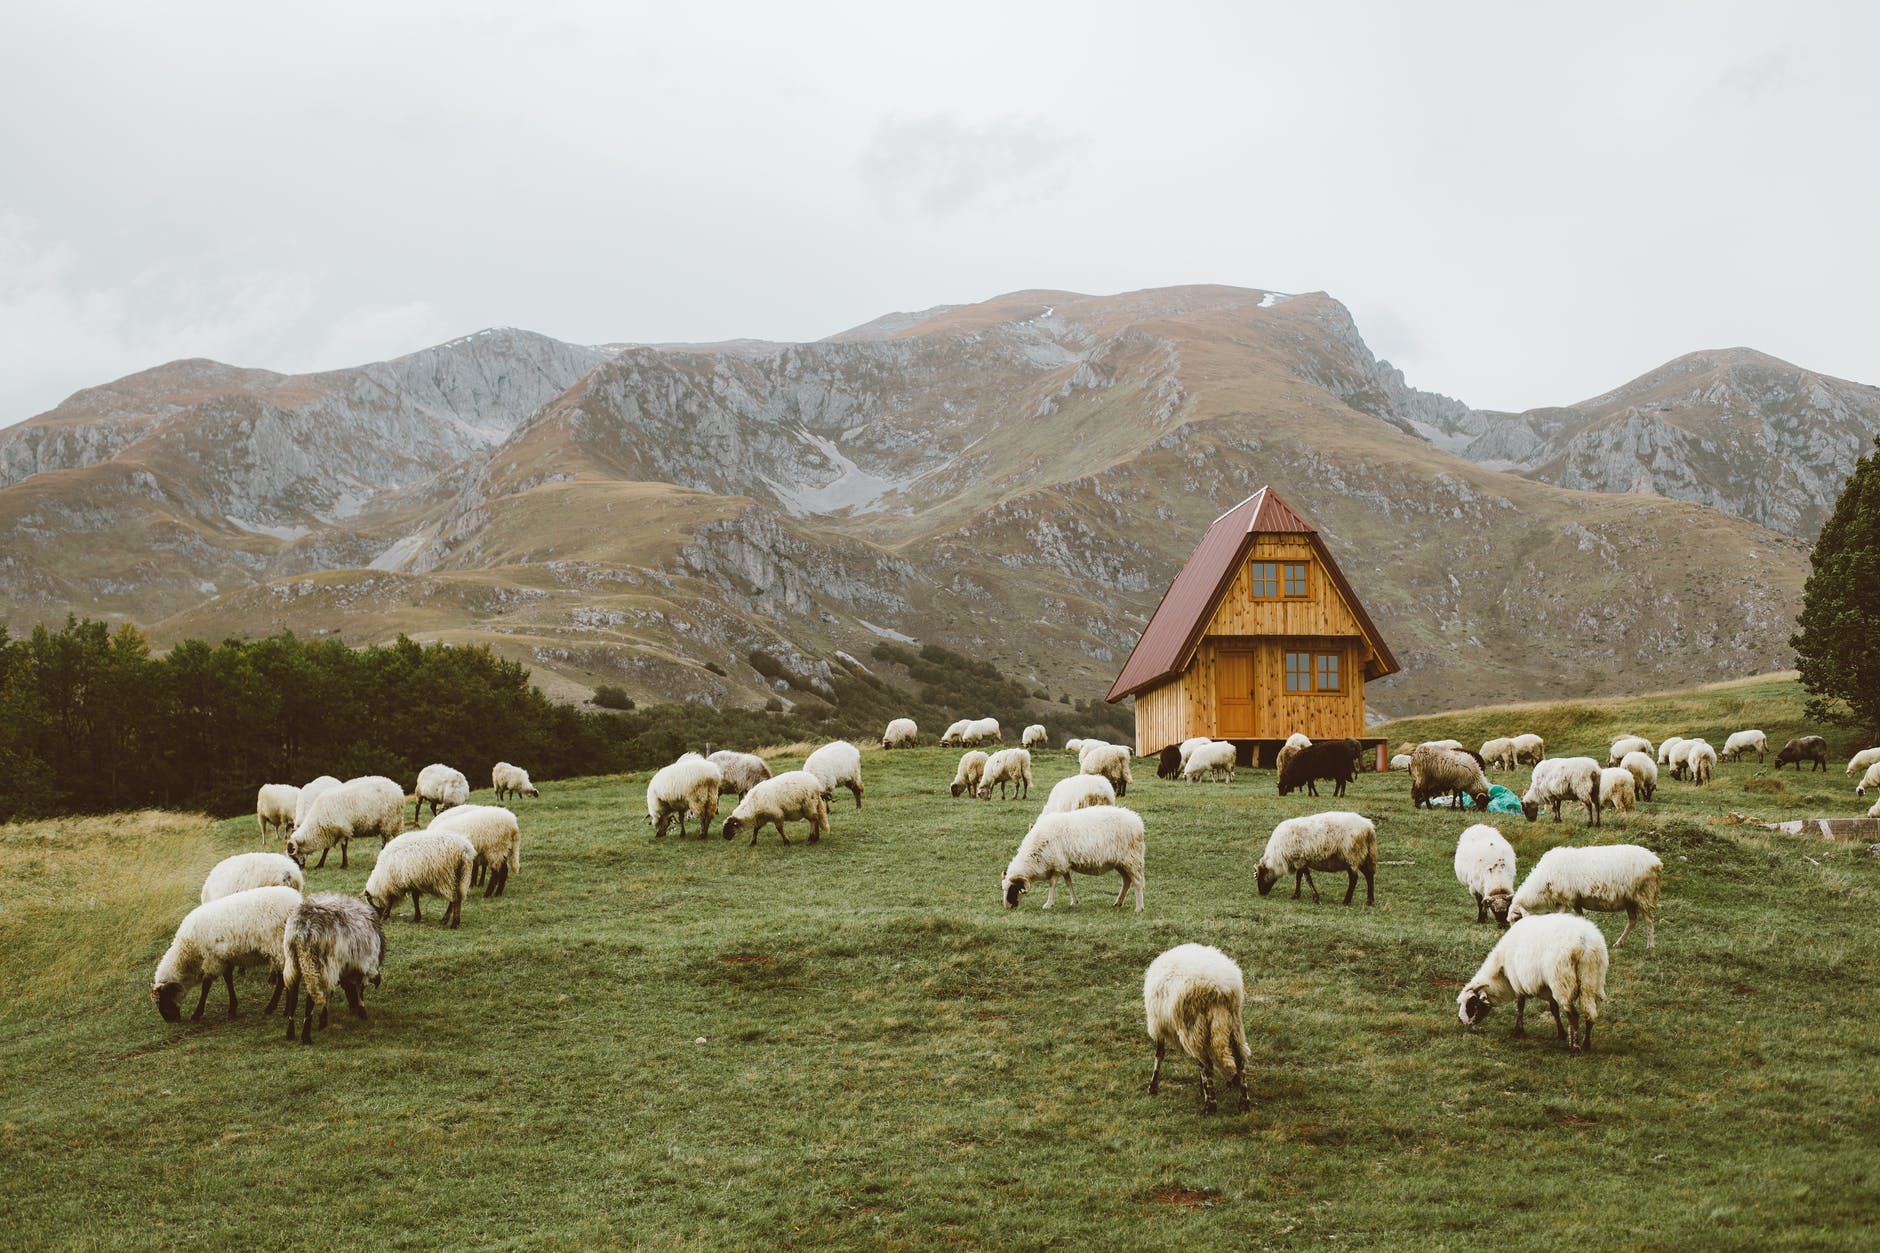 herd of sheep on green grass field